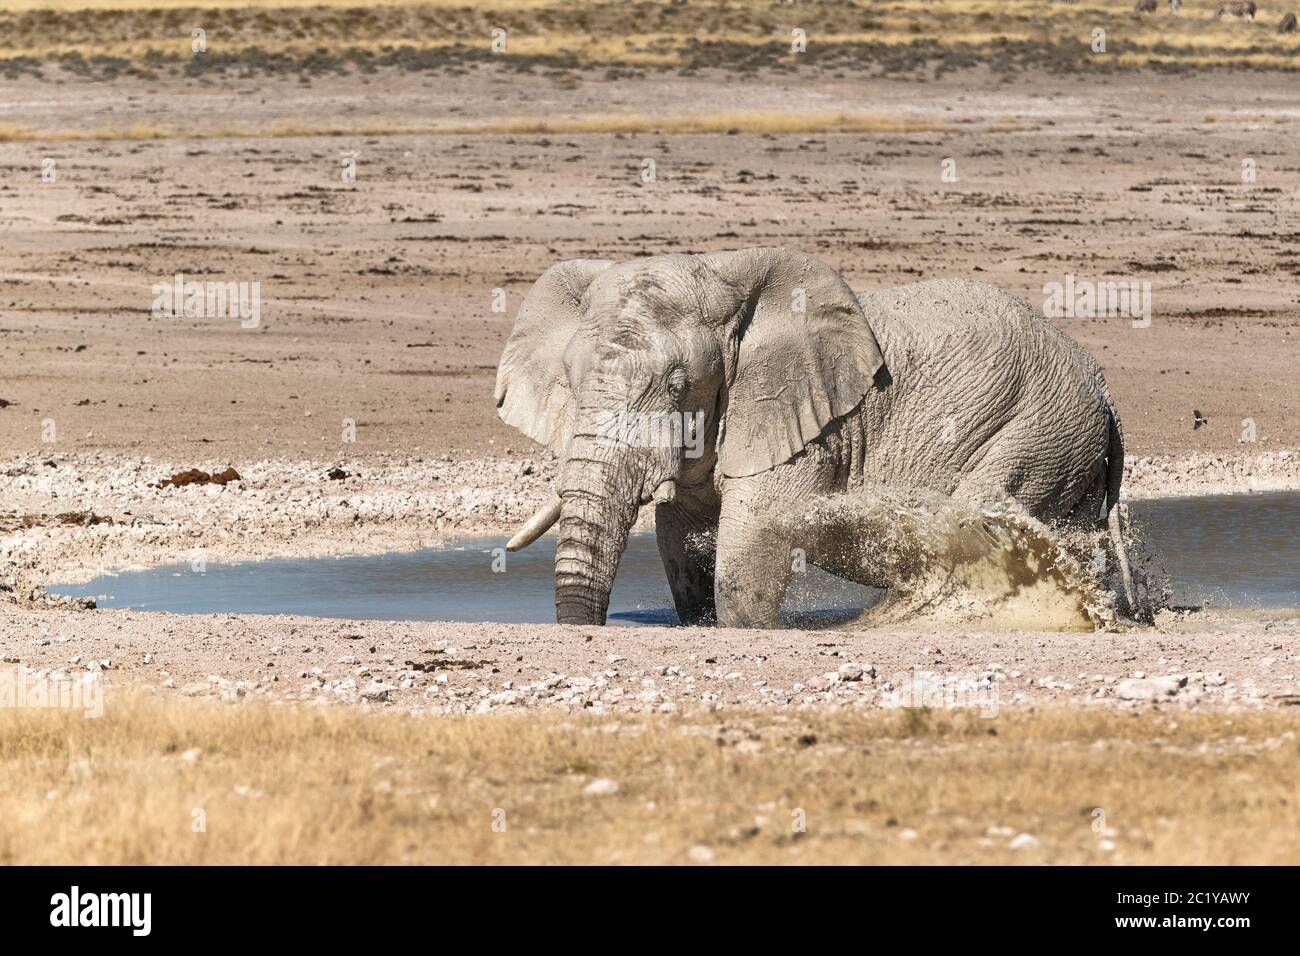 Afrikanischer Elefant (Loxodonta Africana) in einem Wasserloch spritzt Wasser mit Bein. Etosha Nationalpark, Namibia, Afrika Stockfoto